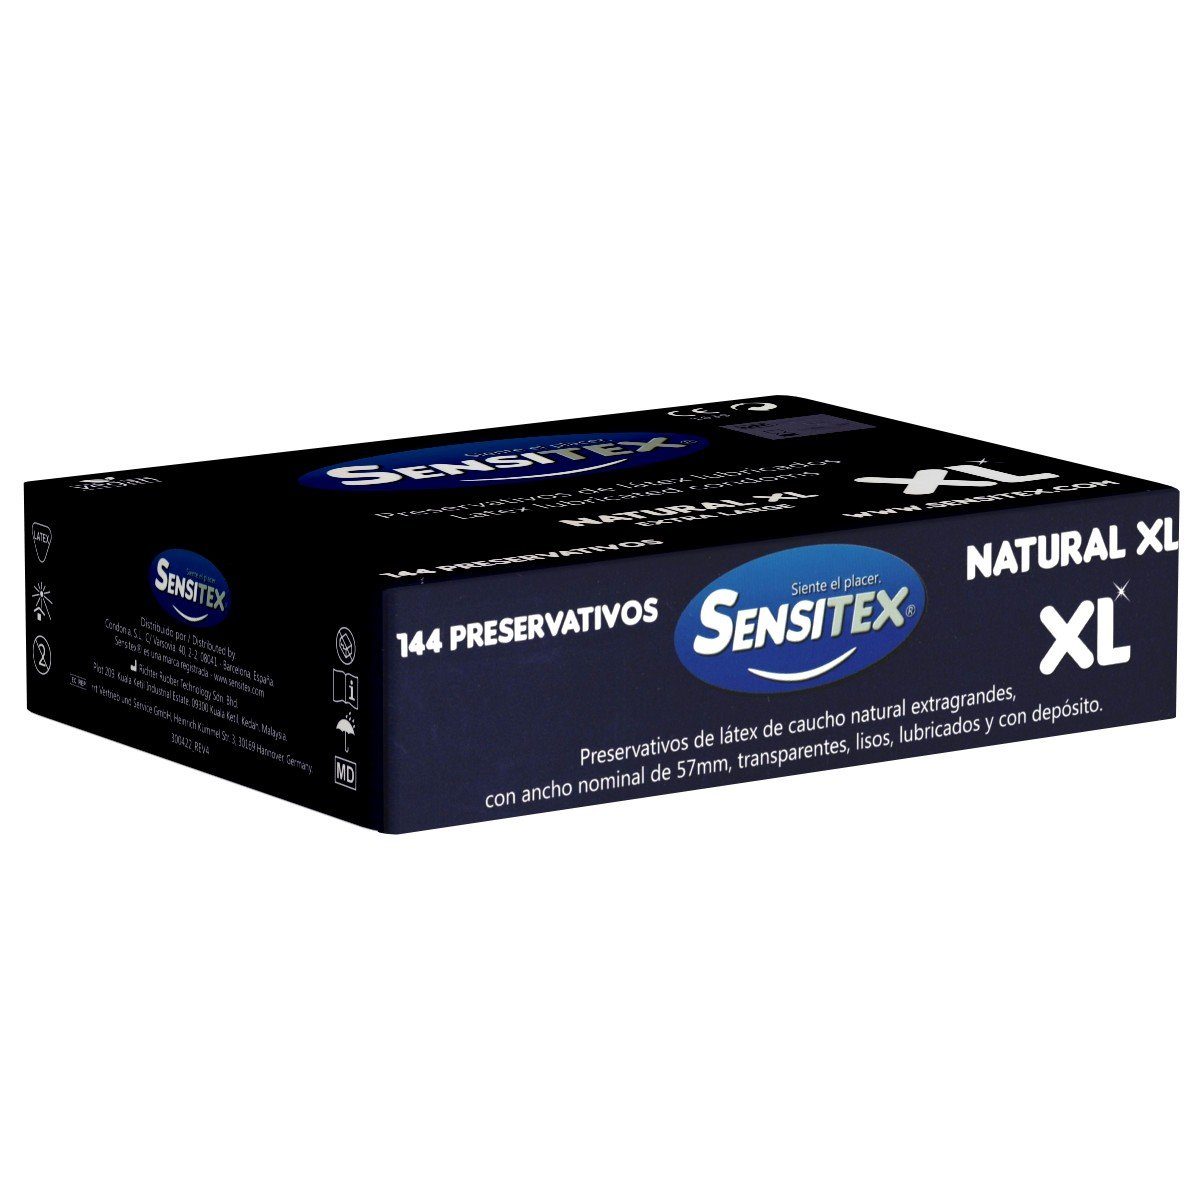 Packung aus größere St., Vorratsbox, Kondome XXL-Kondome 144 Natural XL Spanien mit, und Sensitex (57mm) vegane